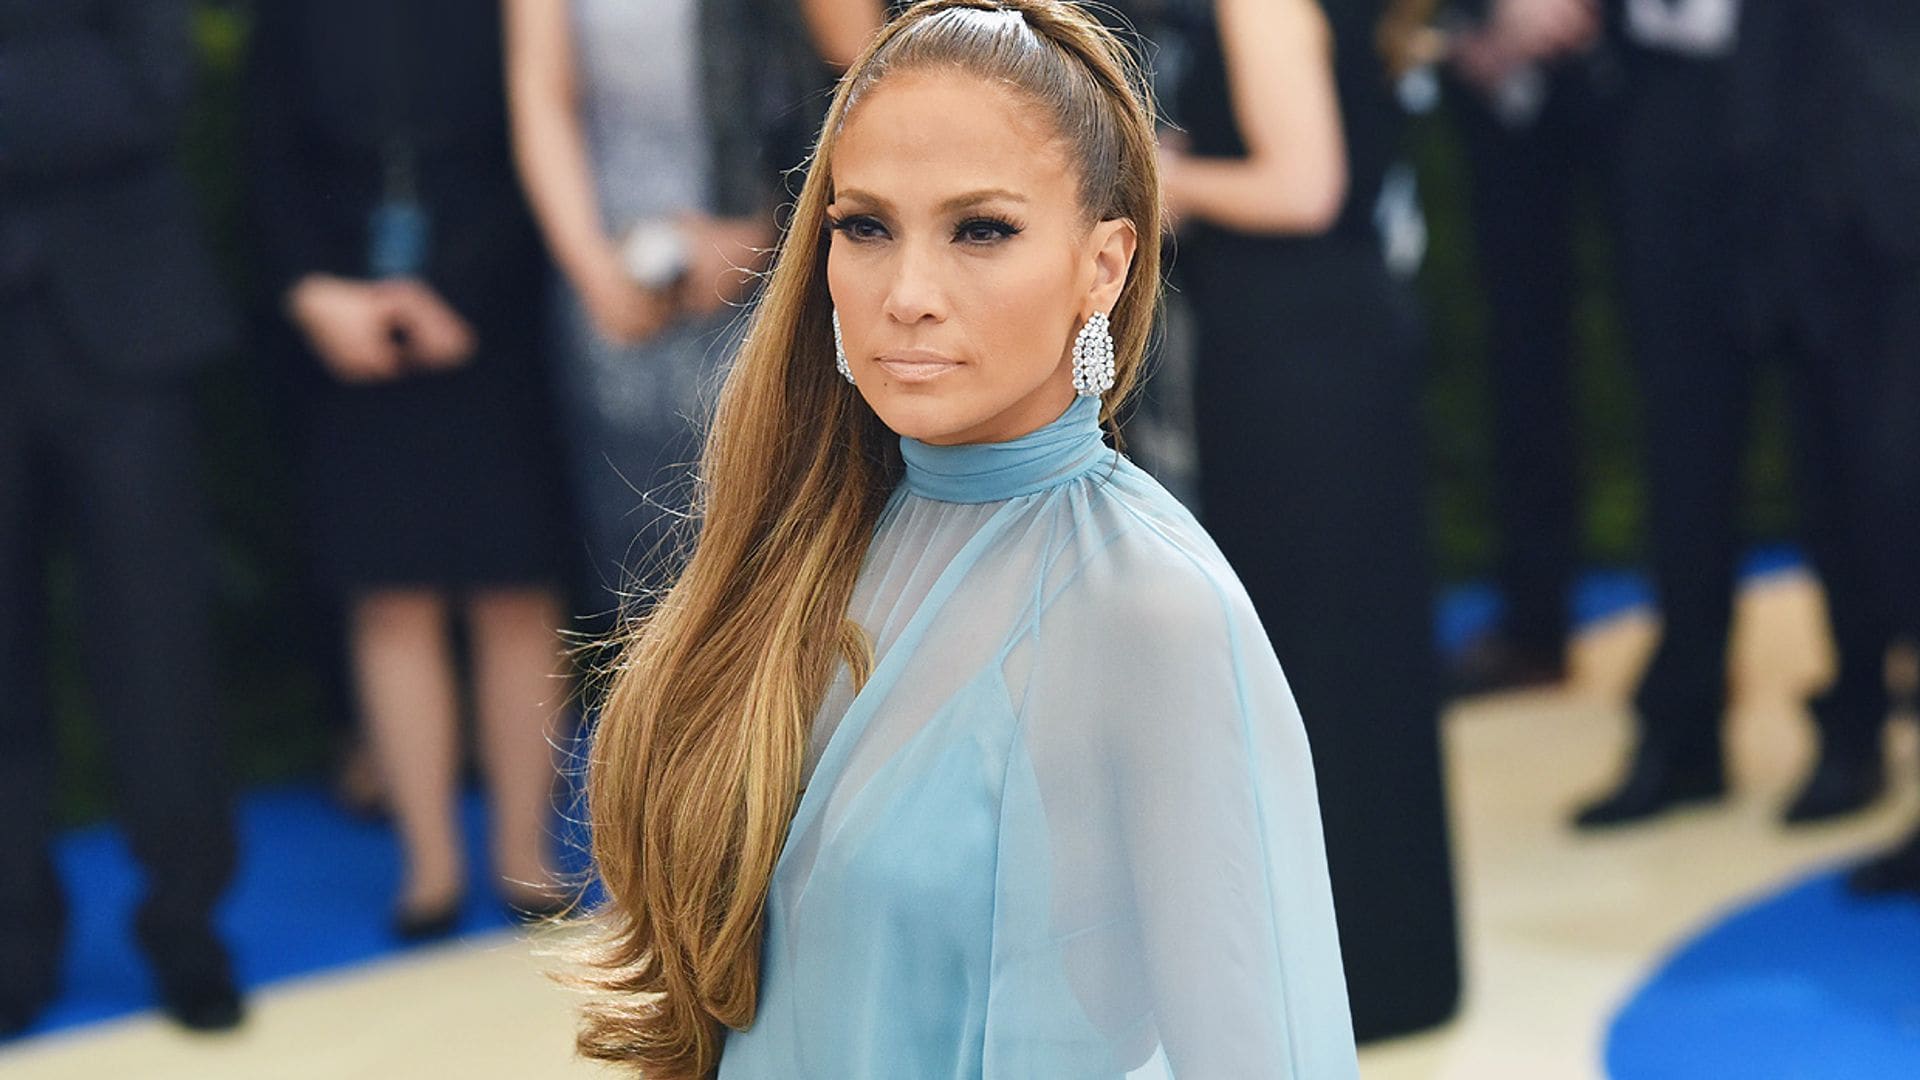 Ni recogido ni extensiones, los fans de Jennifer Lopez eligen este como su look favorito